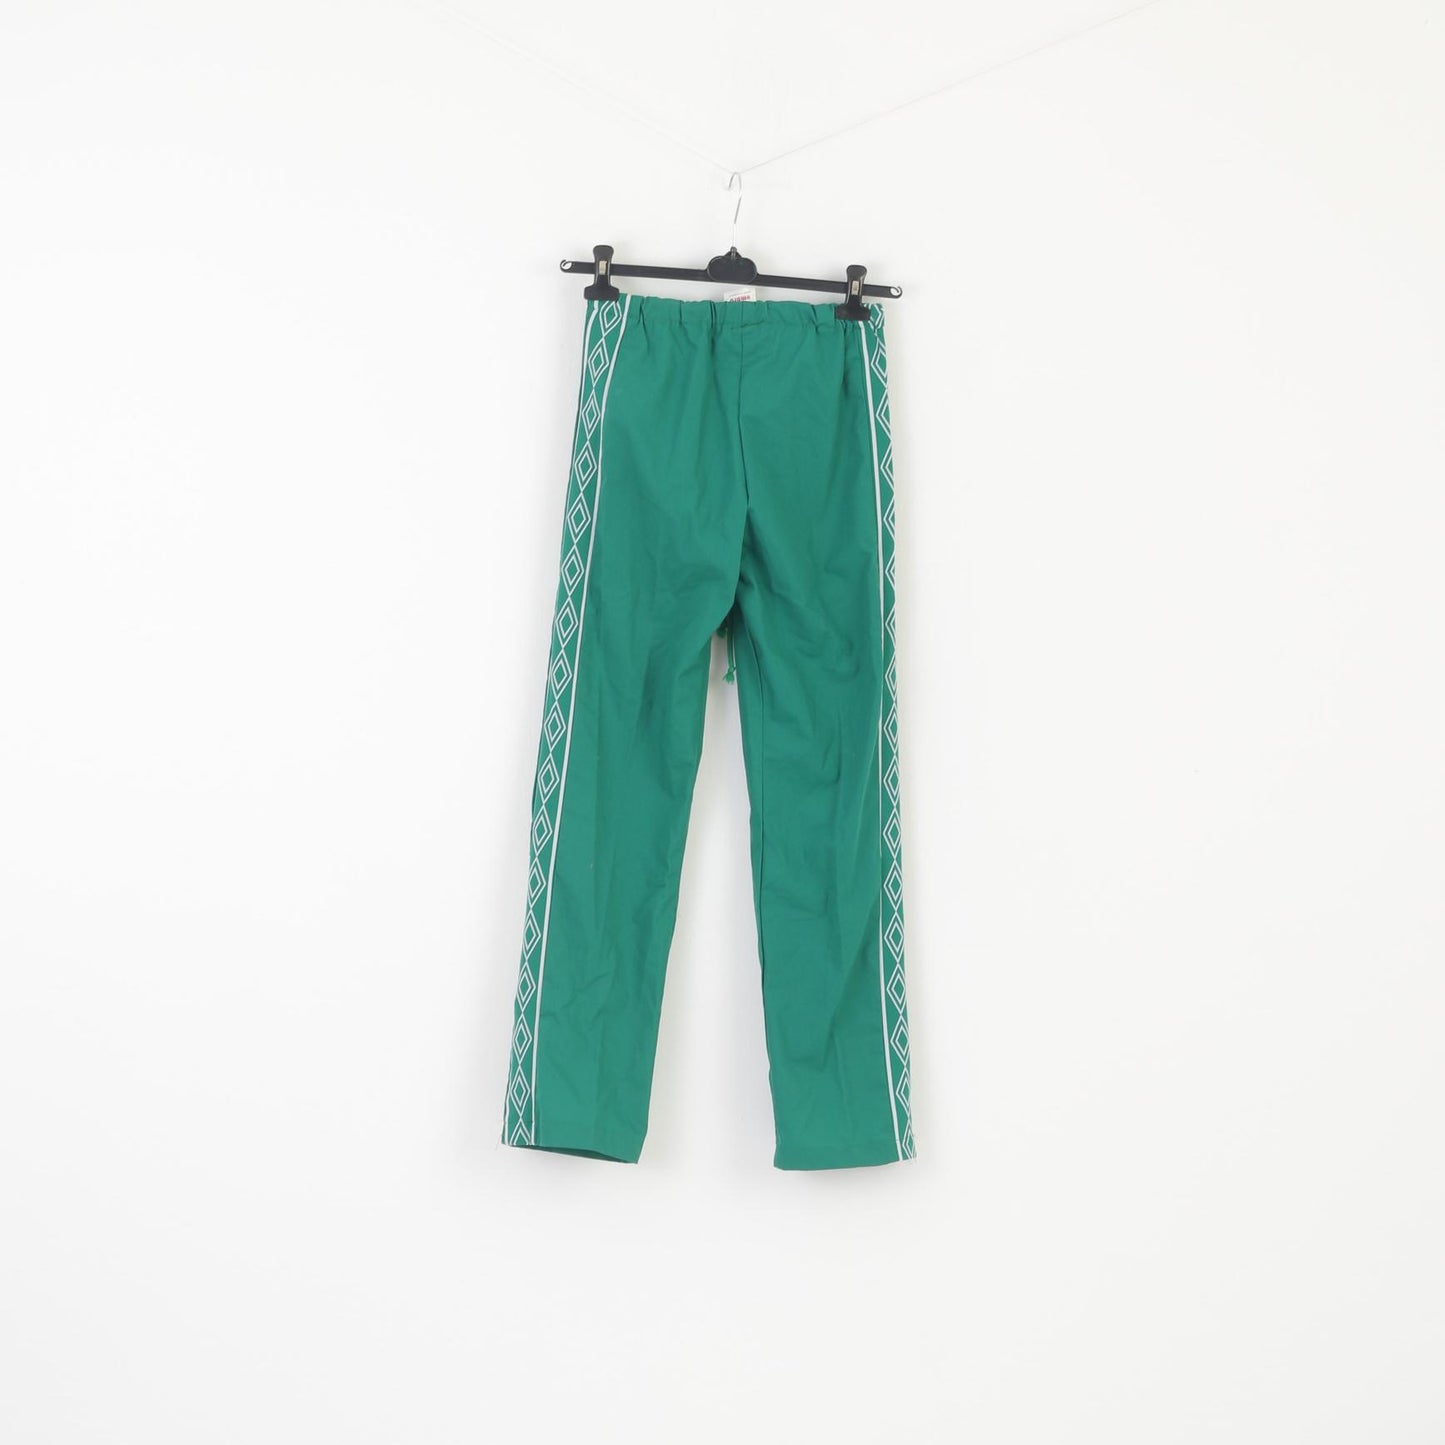 Umbro Youth 168 Pantalon de survêtement vert en coton mélangé vintage Norvège Pantalon rétro